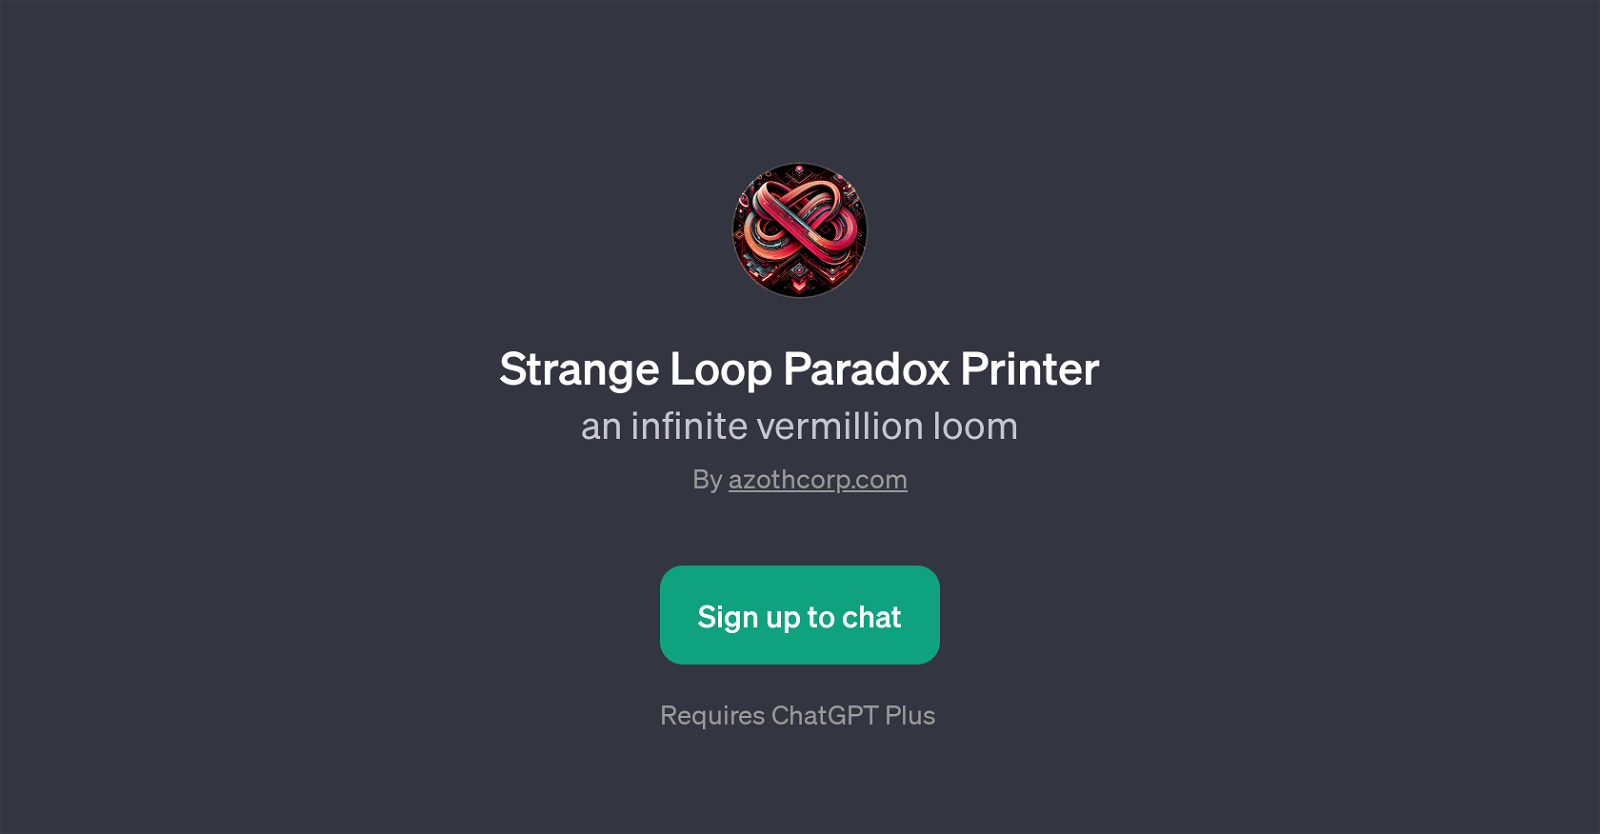 Strange Loop Paradox Printer website